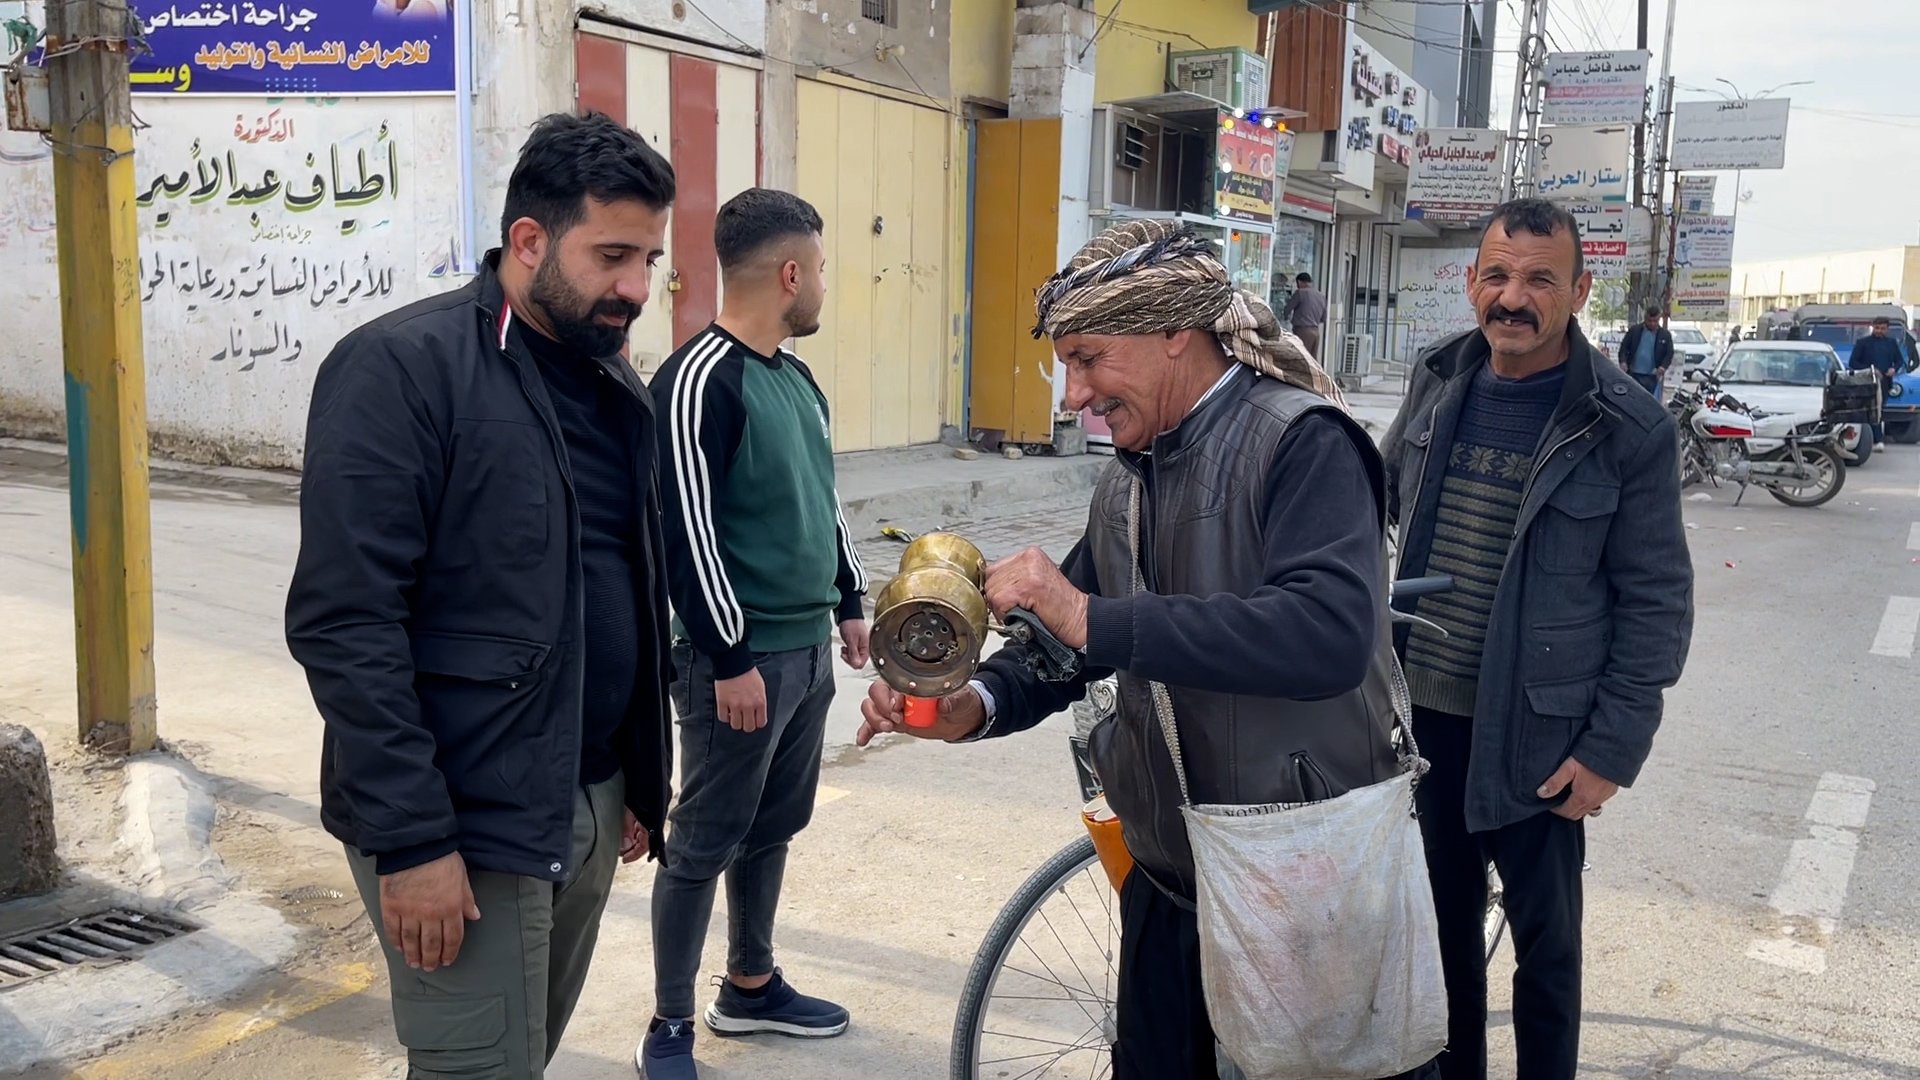 فيديو مع بائع القهوة الشهير في شوارع جلولاء: أعمل بلا أخطاء.. وبُن اليمن هو الأفضل